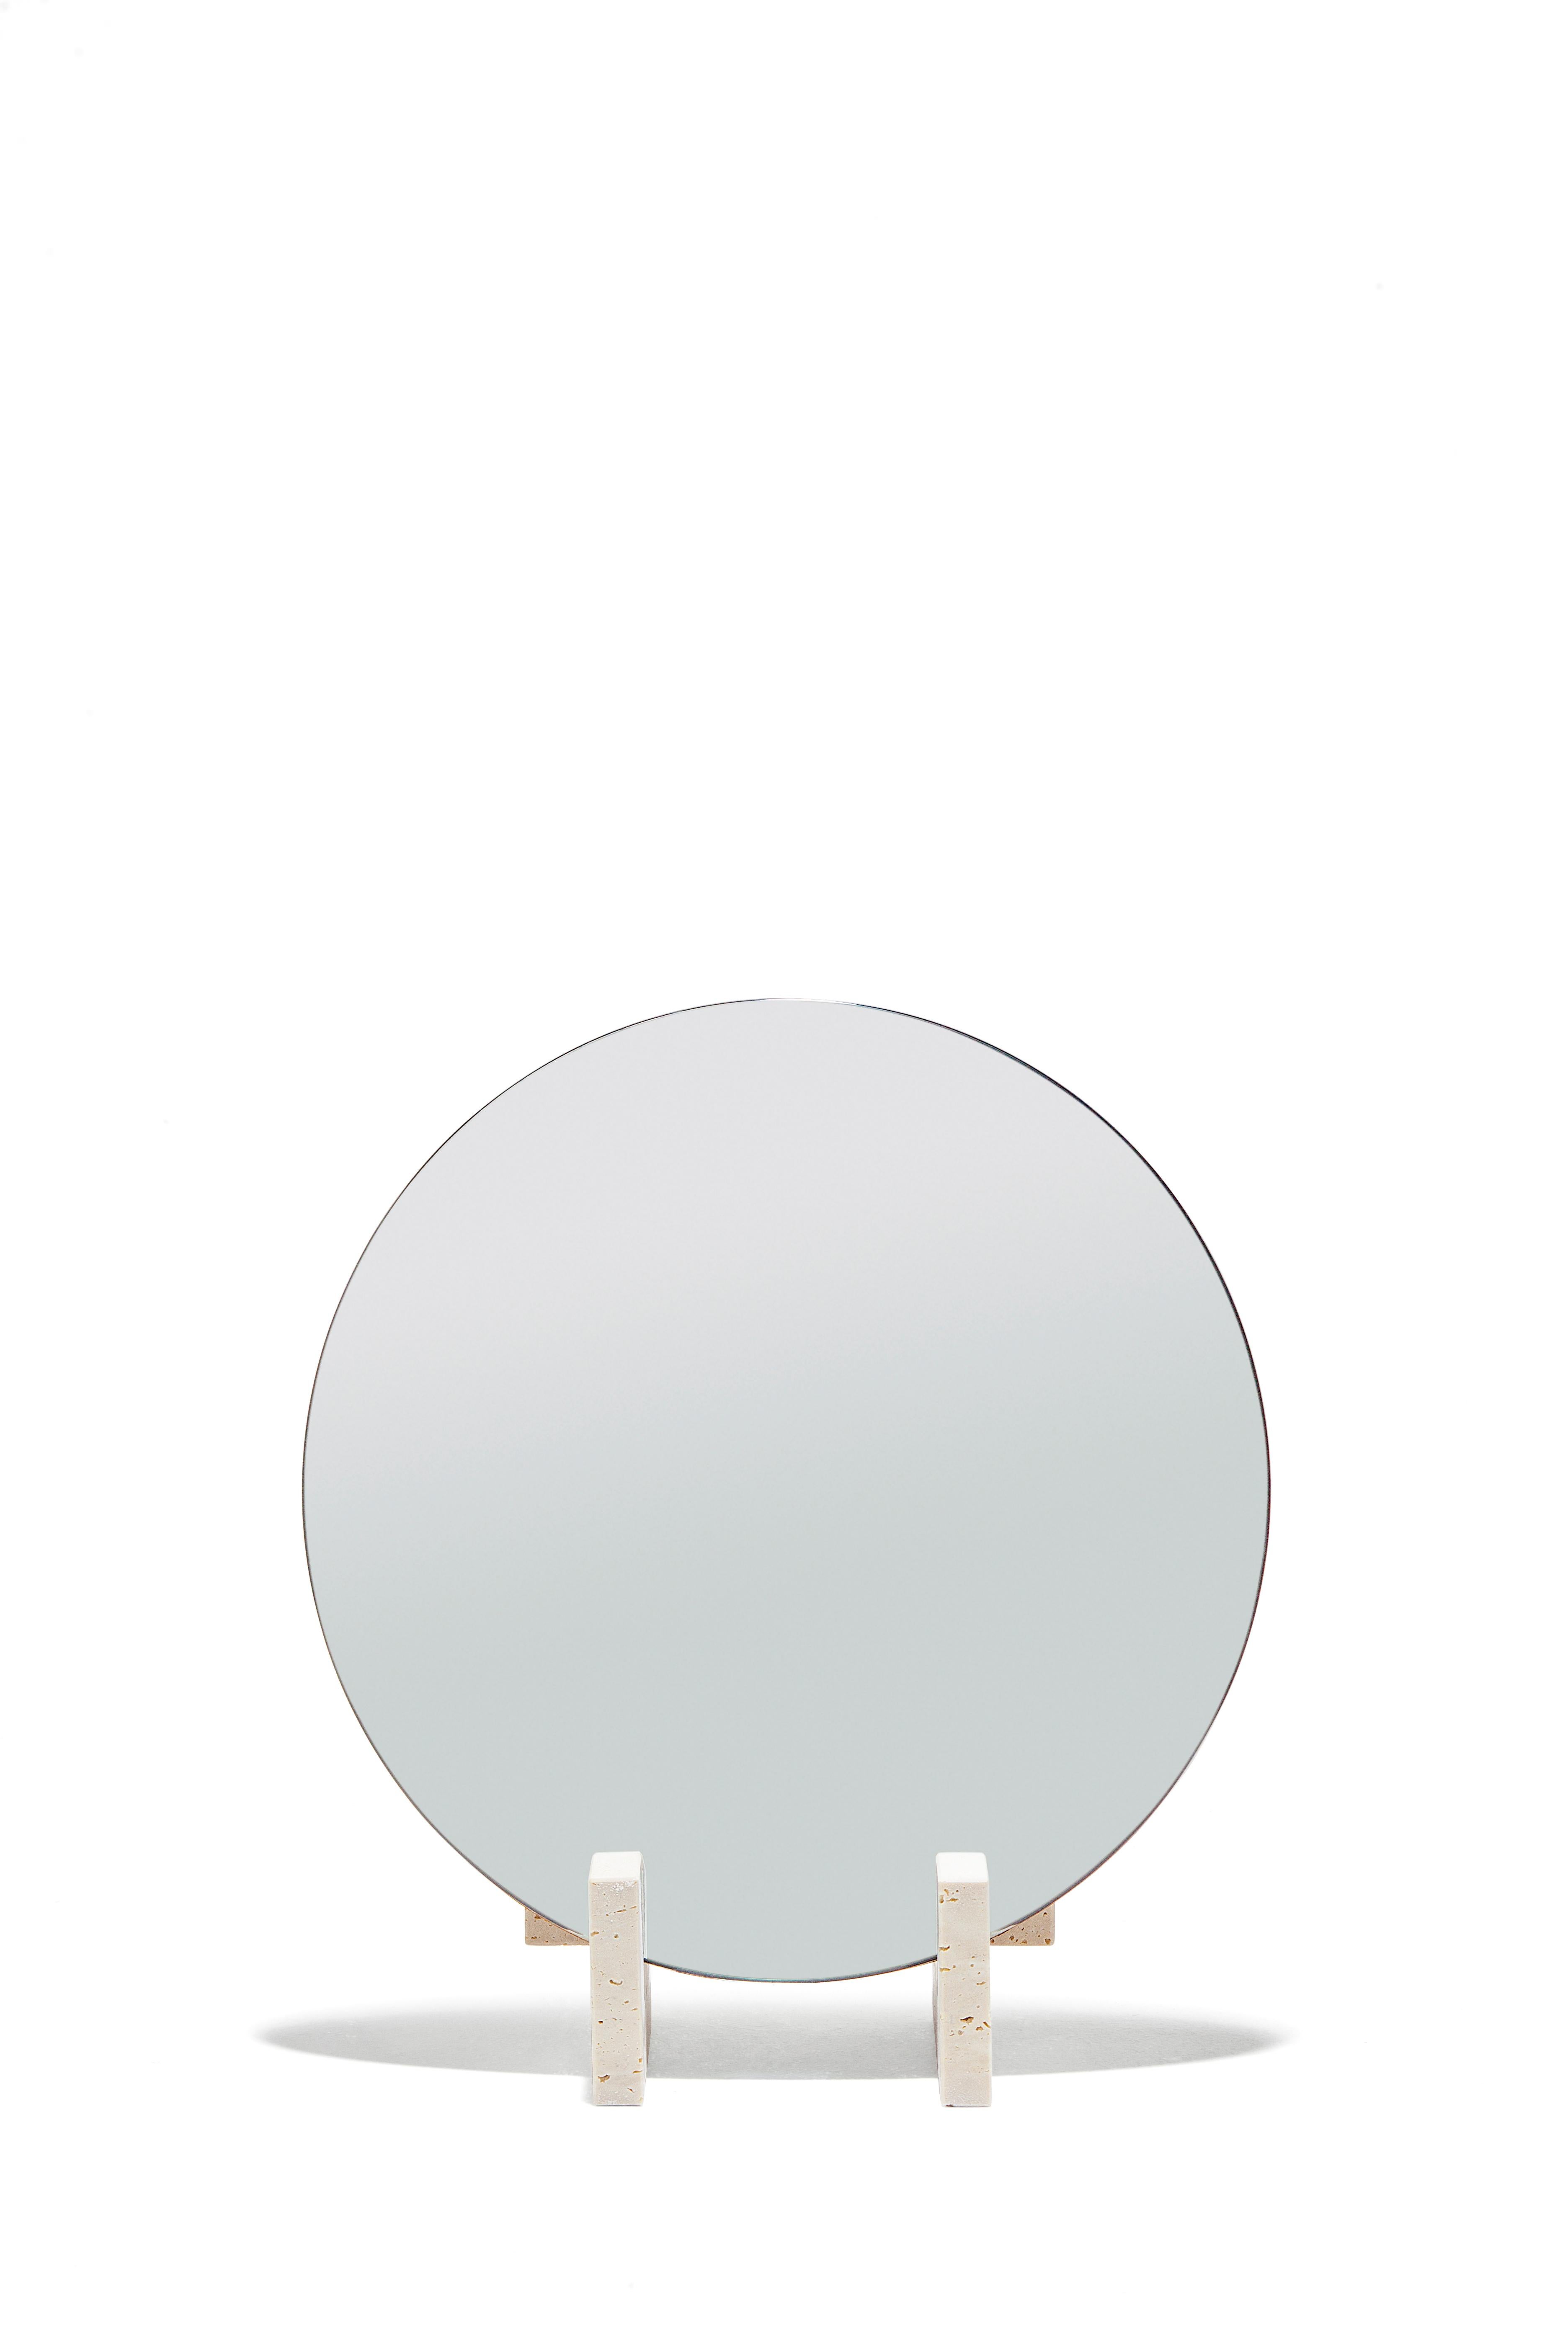 Le Fit Mirror est un miroir de style minimaliste composé de trois pièces de marbre Travertin traitées comme base. La partie arrière du miroir est faite d'une plaque de fer rouillée et traitée avec des huiles spéciales pour sa préservation.
Josep